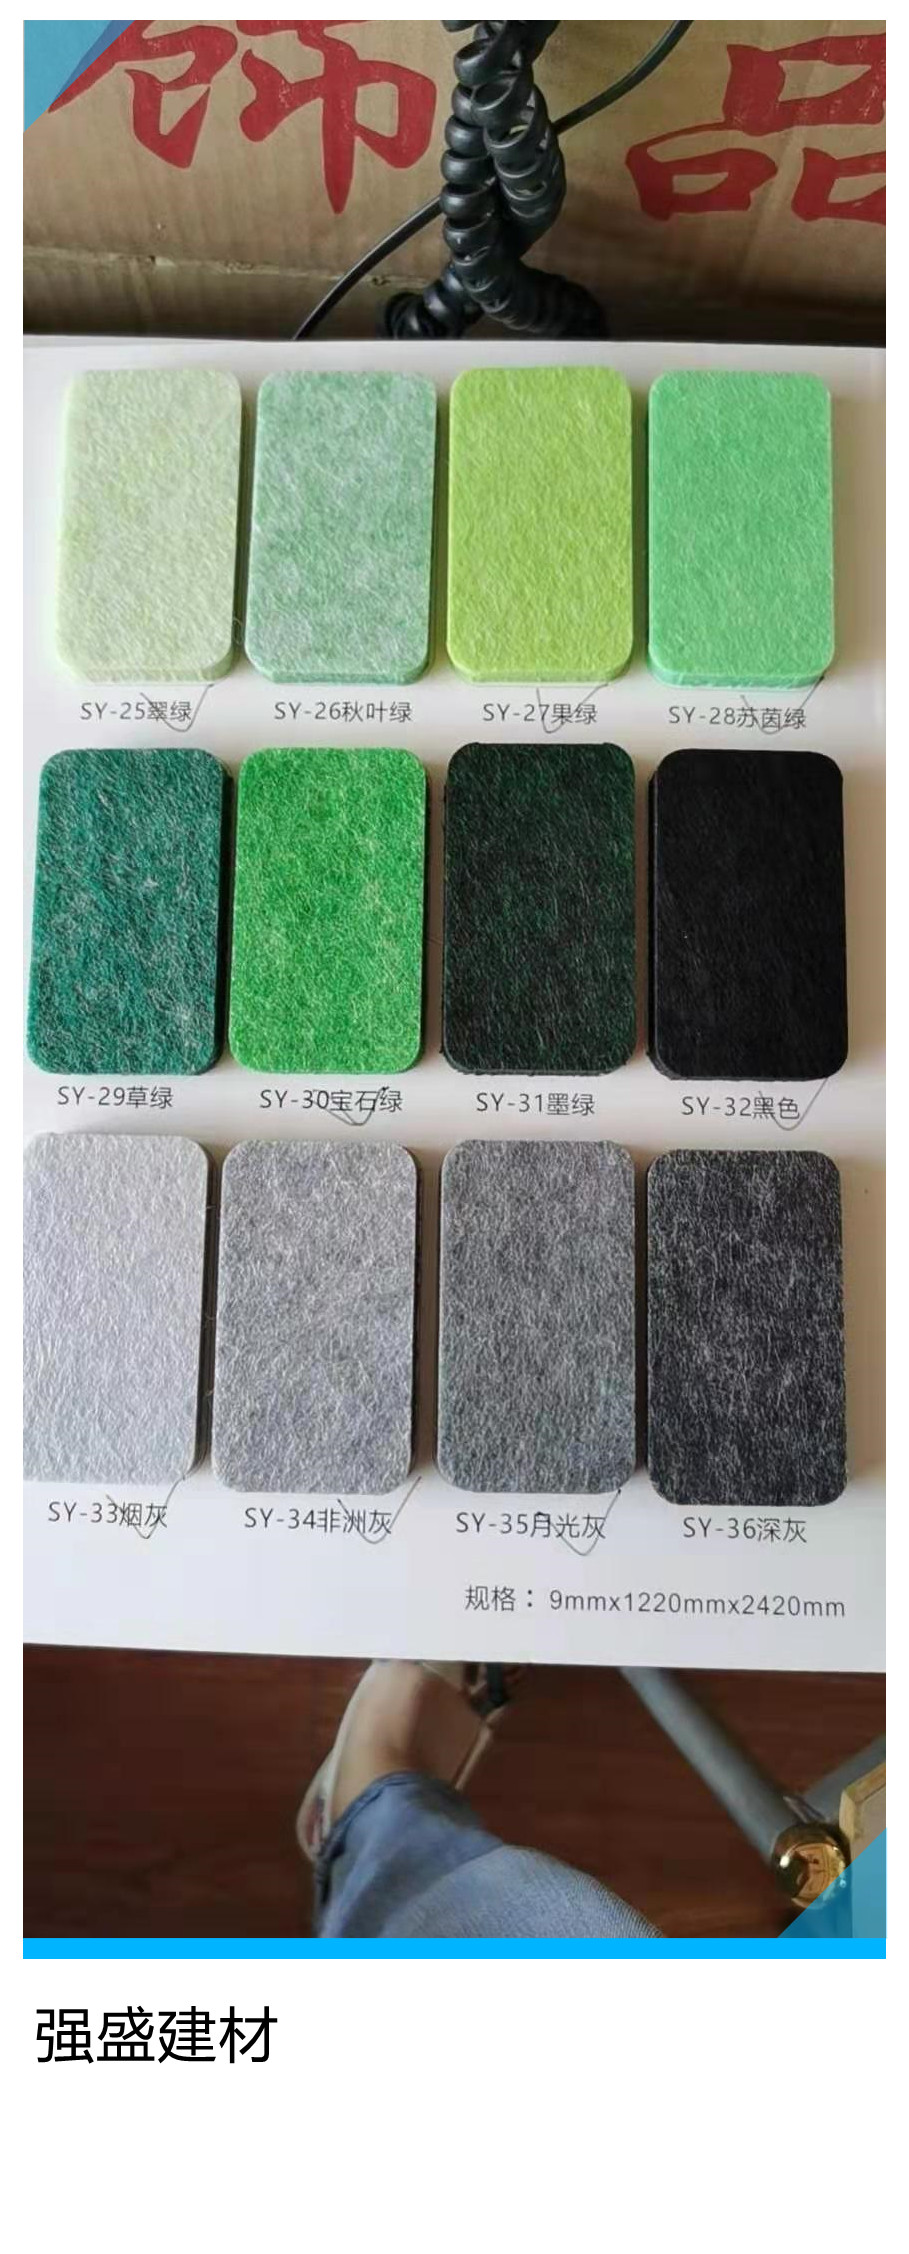 博湖县吸音板销售 彩色纤维吸音板 墙面纤维吸音板强盛颜色齐全